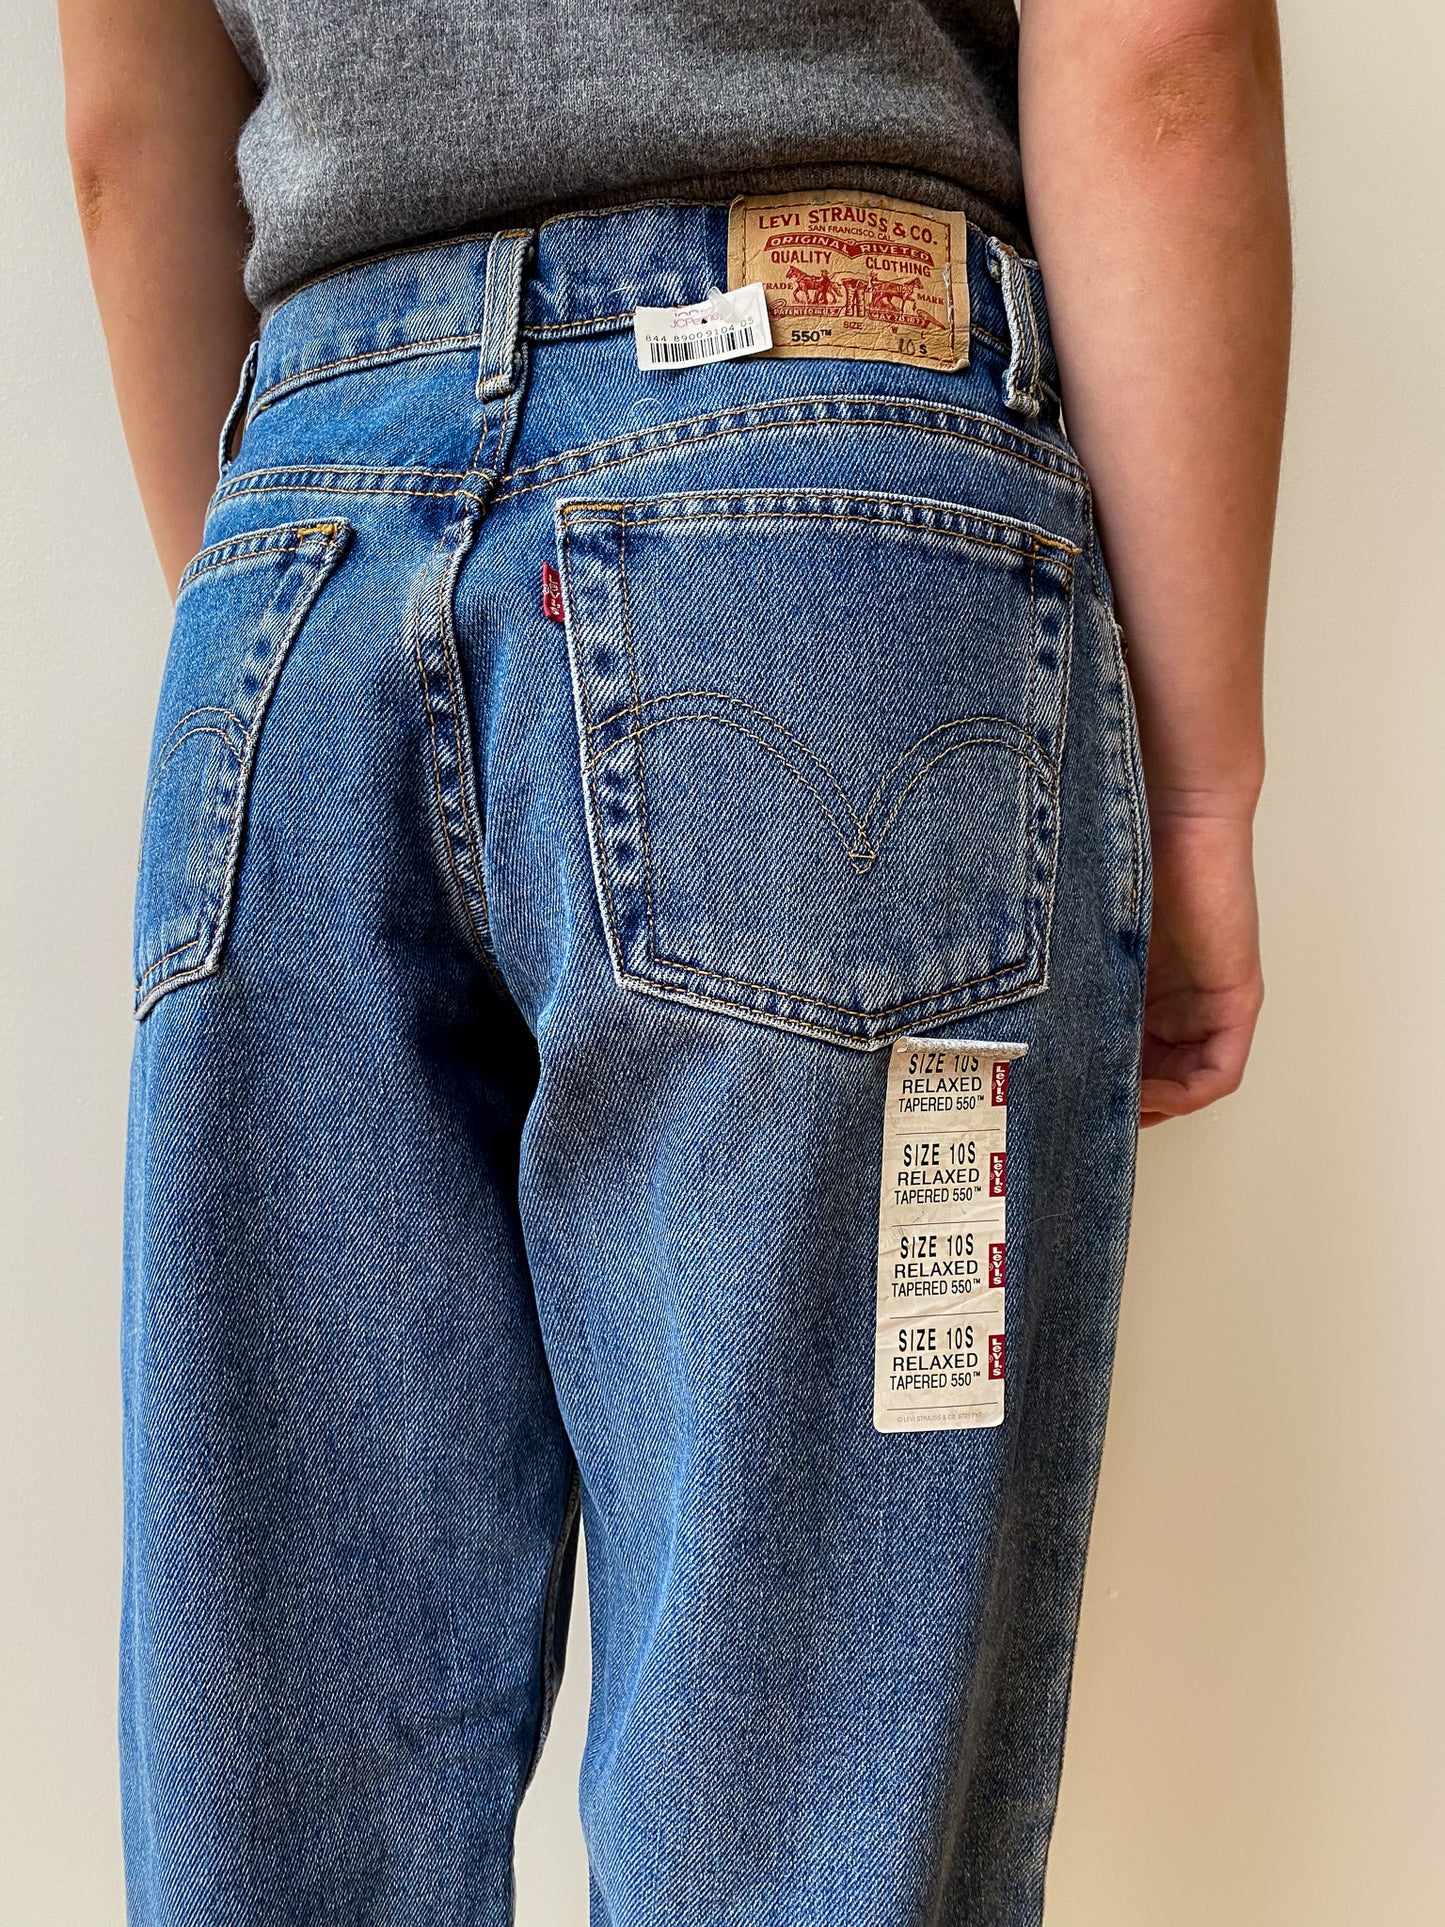 Levi’s 550 Jeans—[29x29]